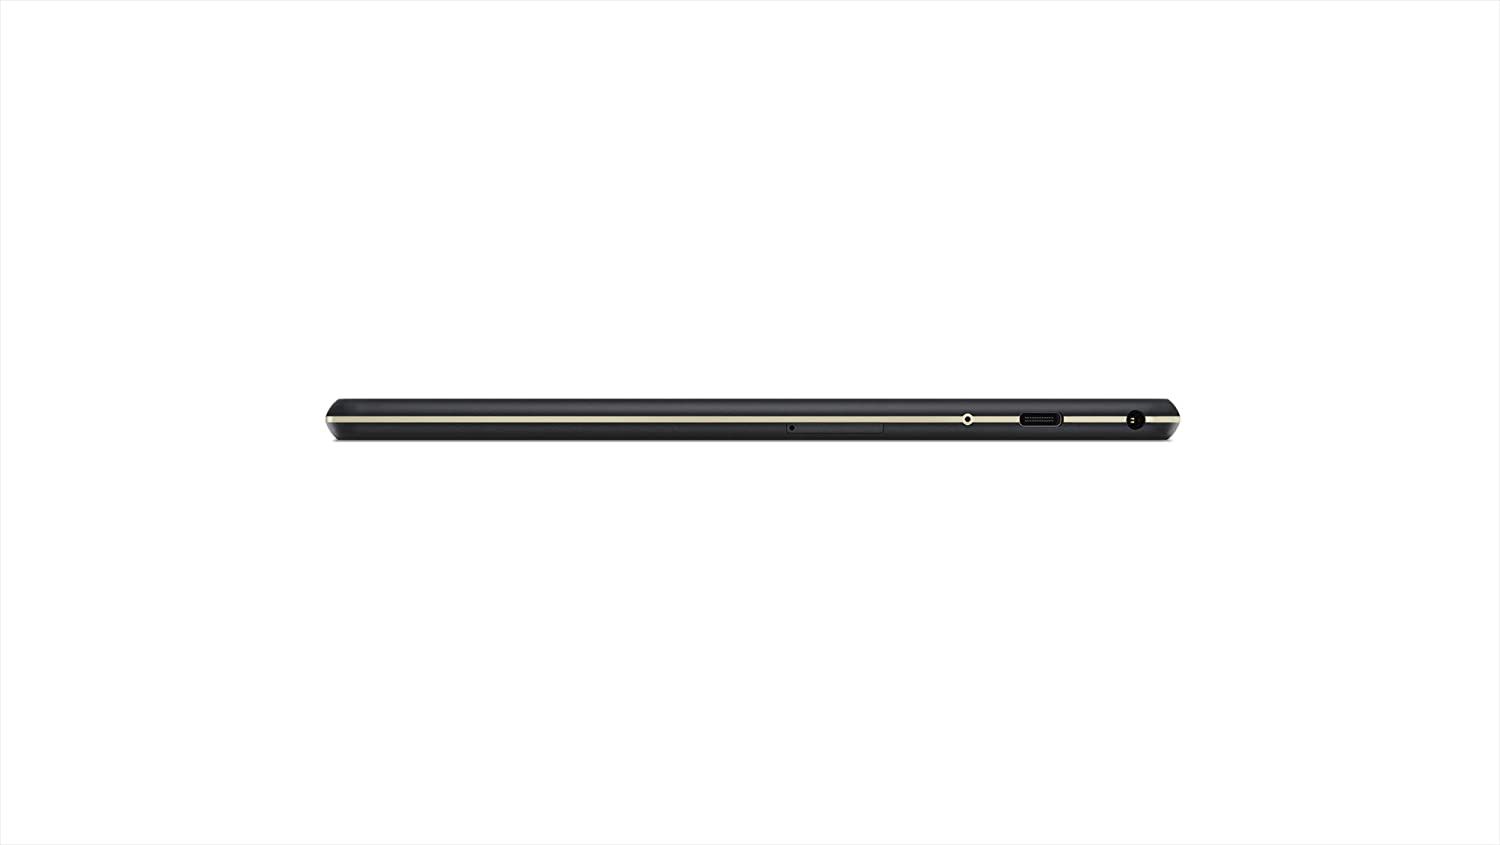 ZA5A0004SE - Tablet Lenovo Tab M10 10.1